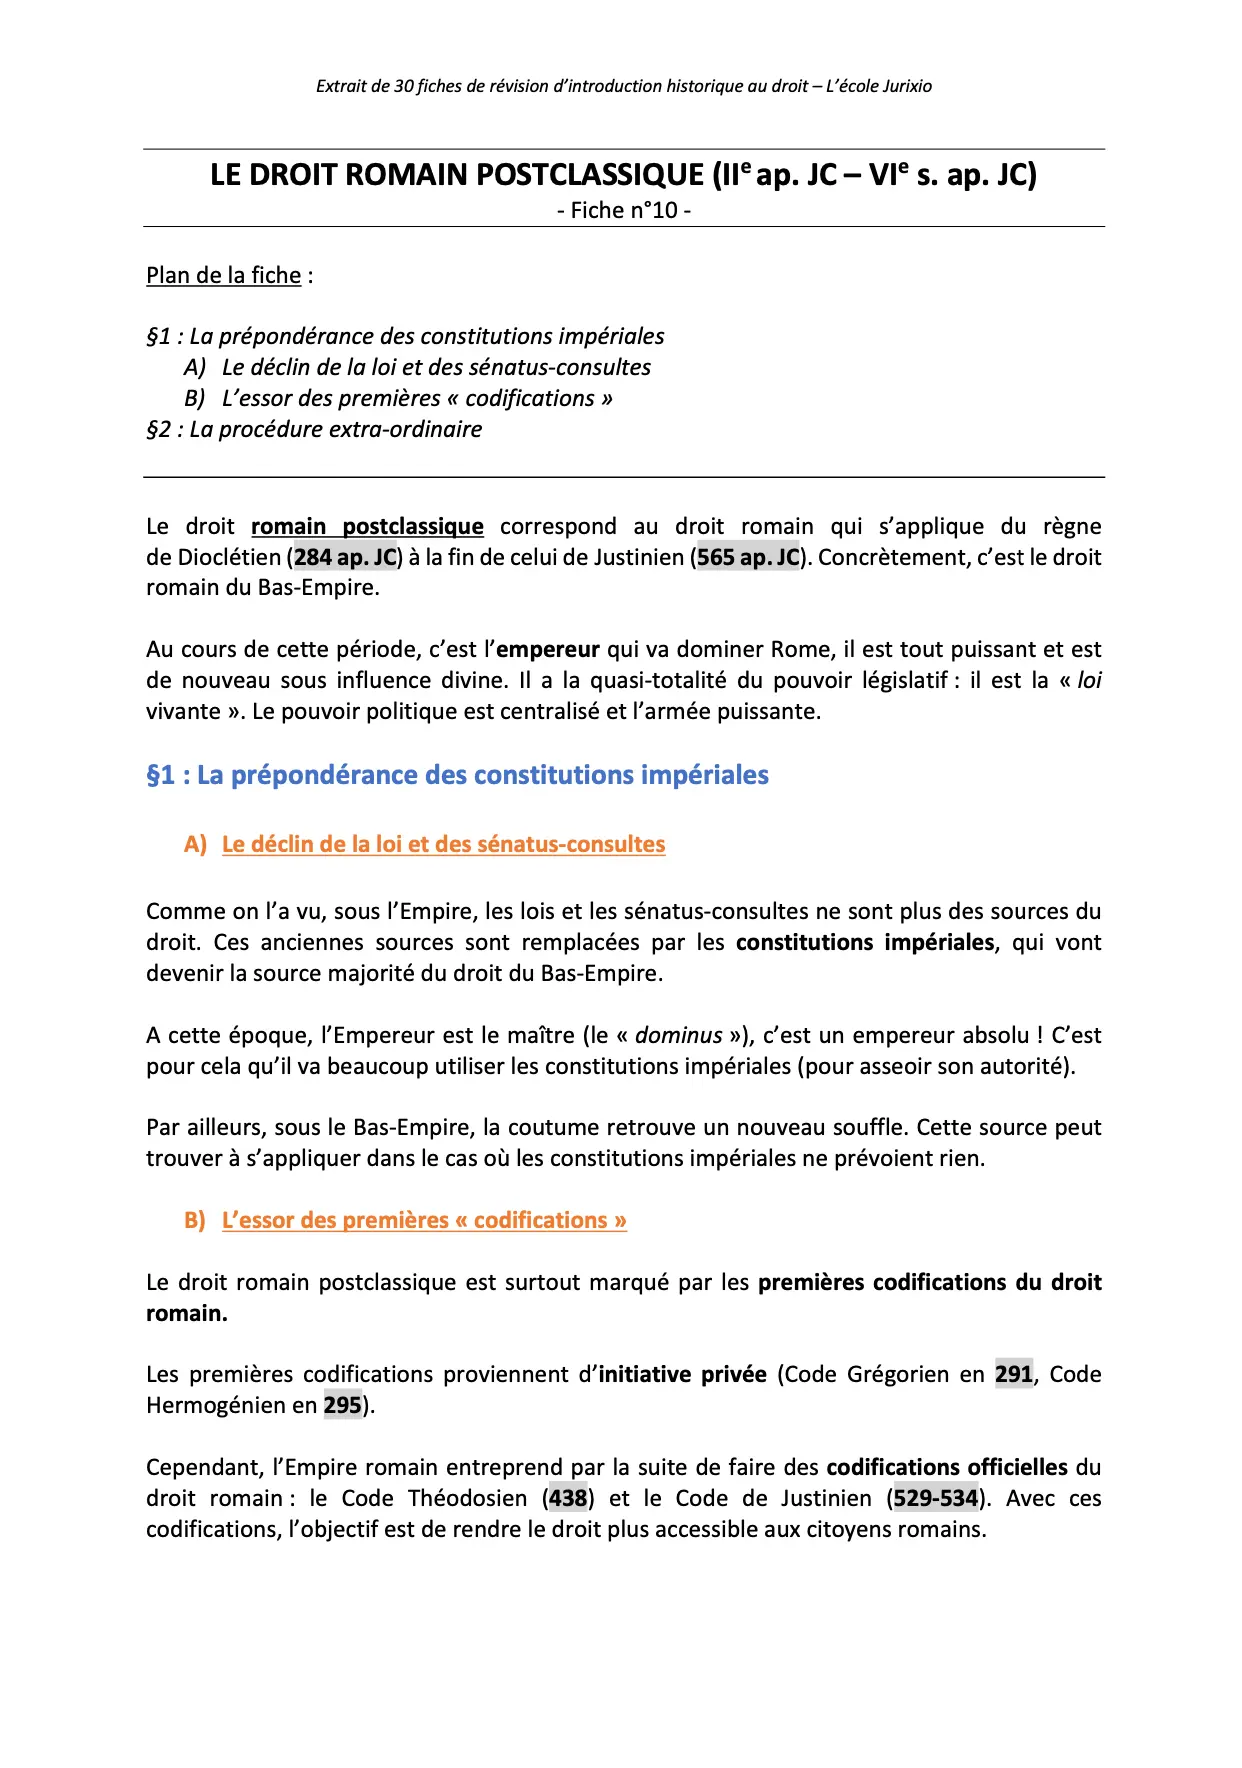 Introduction historique au droit L1 fiches PDF